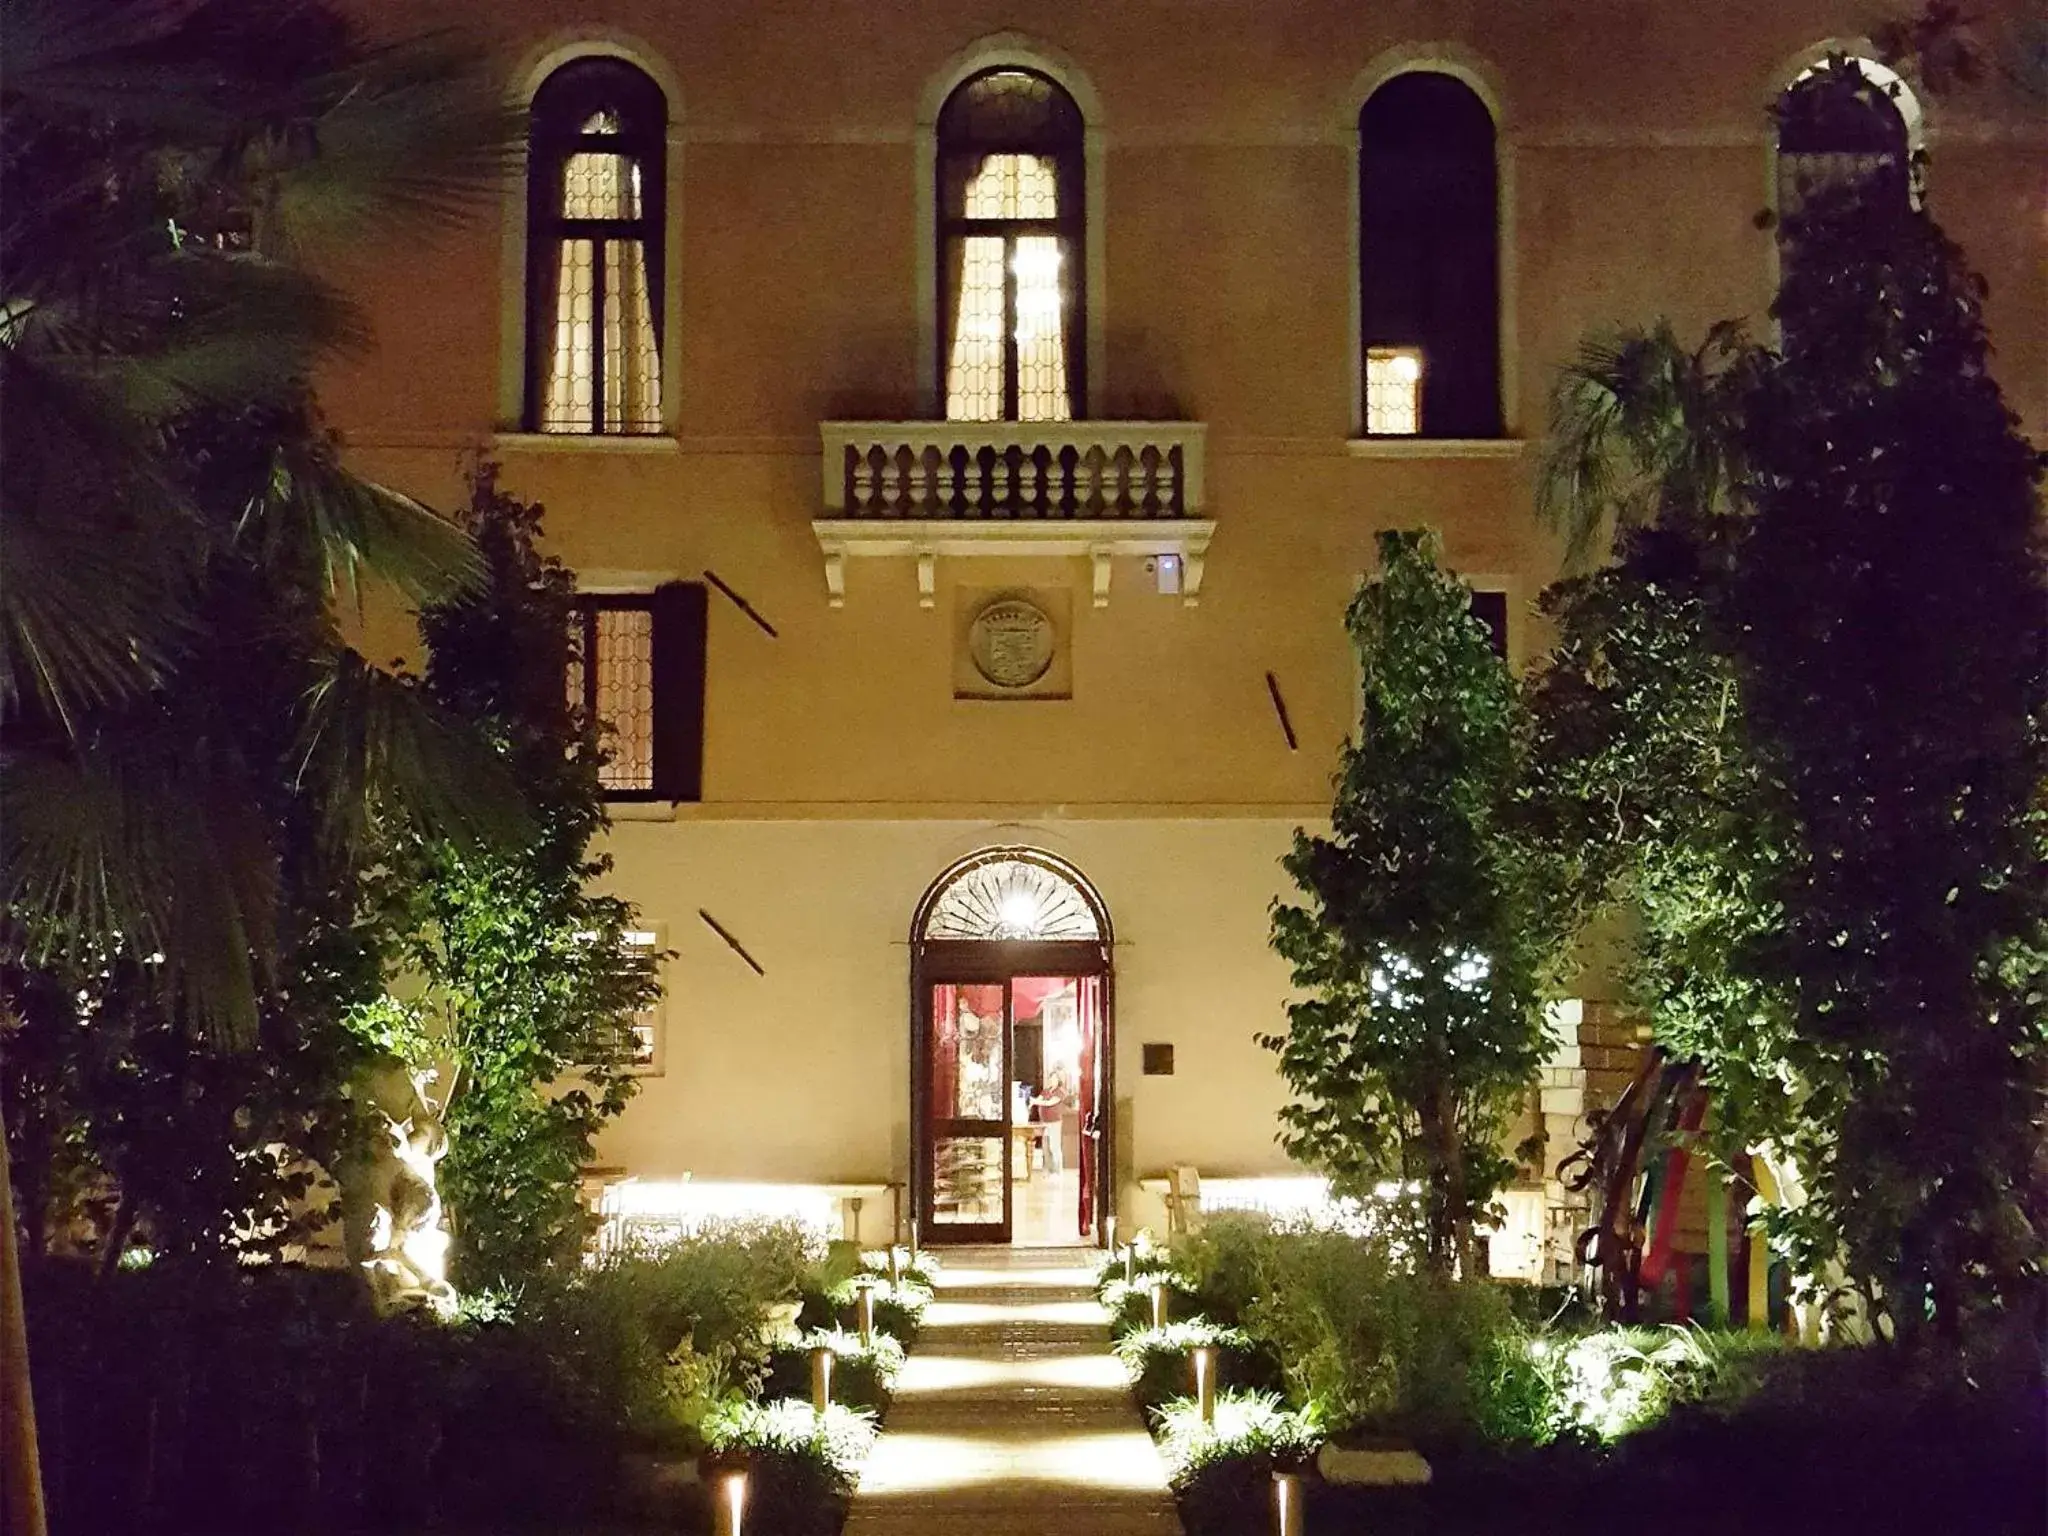 Property building, Facade/Entrance in Palazzo Venart Luxury Hotel